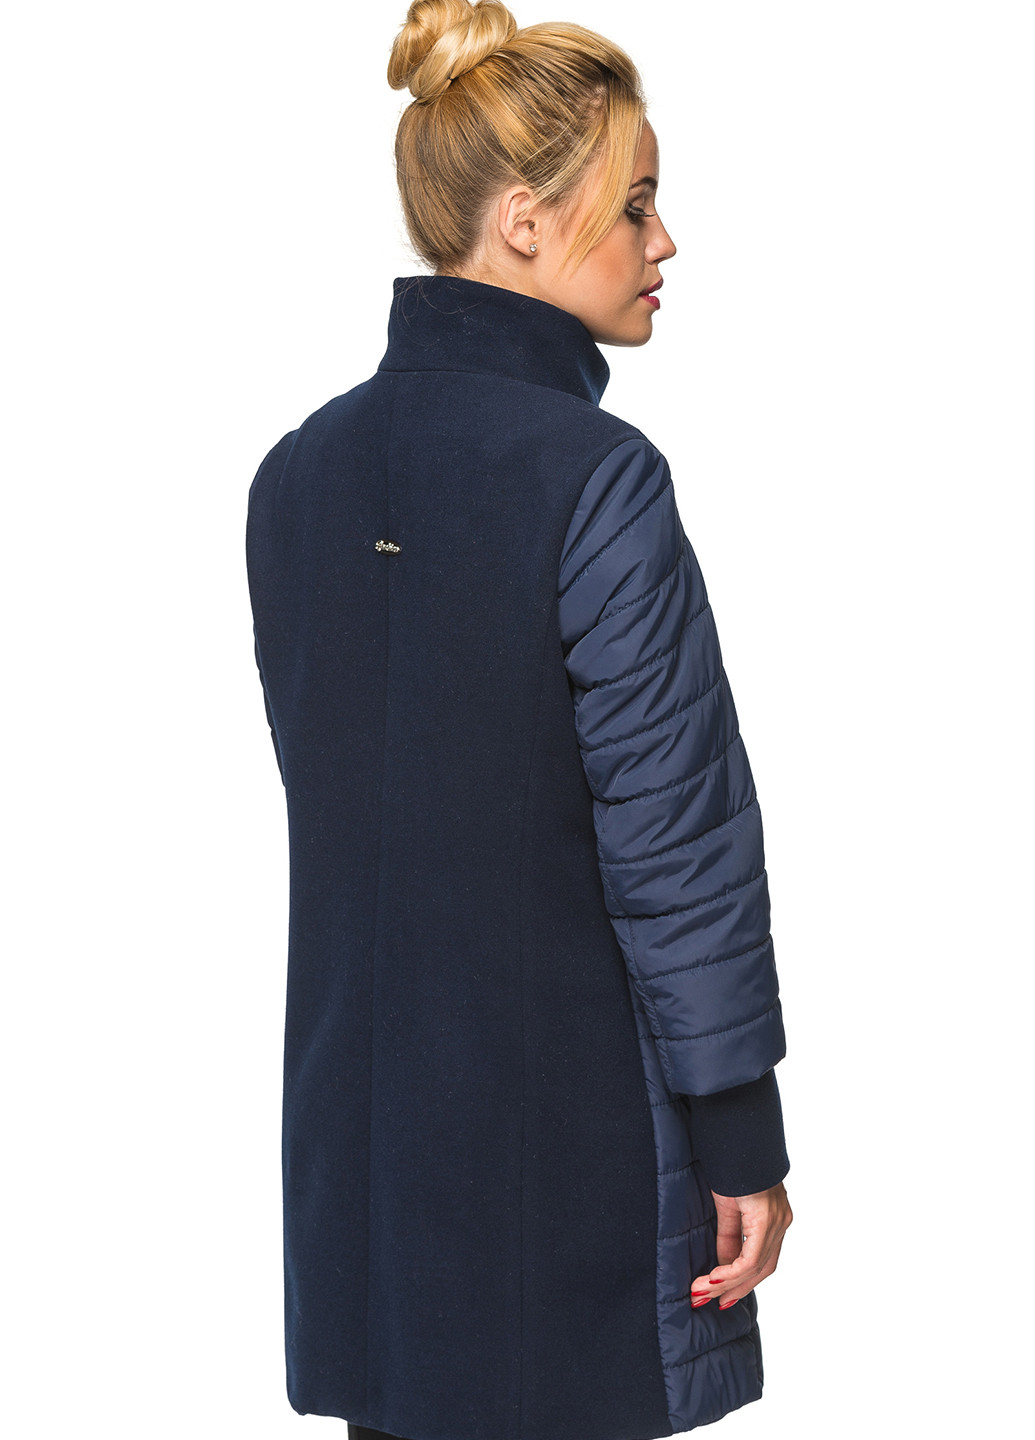 Синяя зимняя куртка Кариант